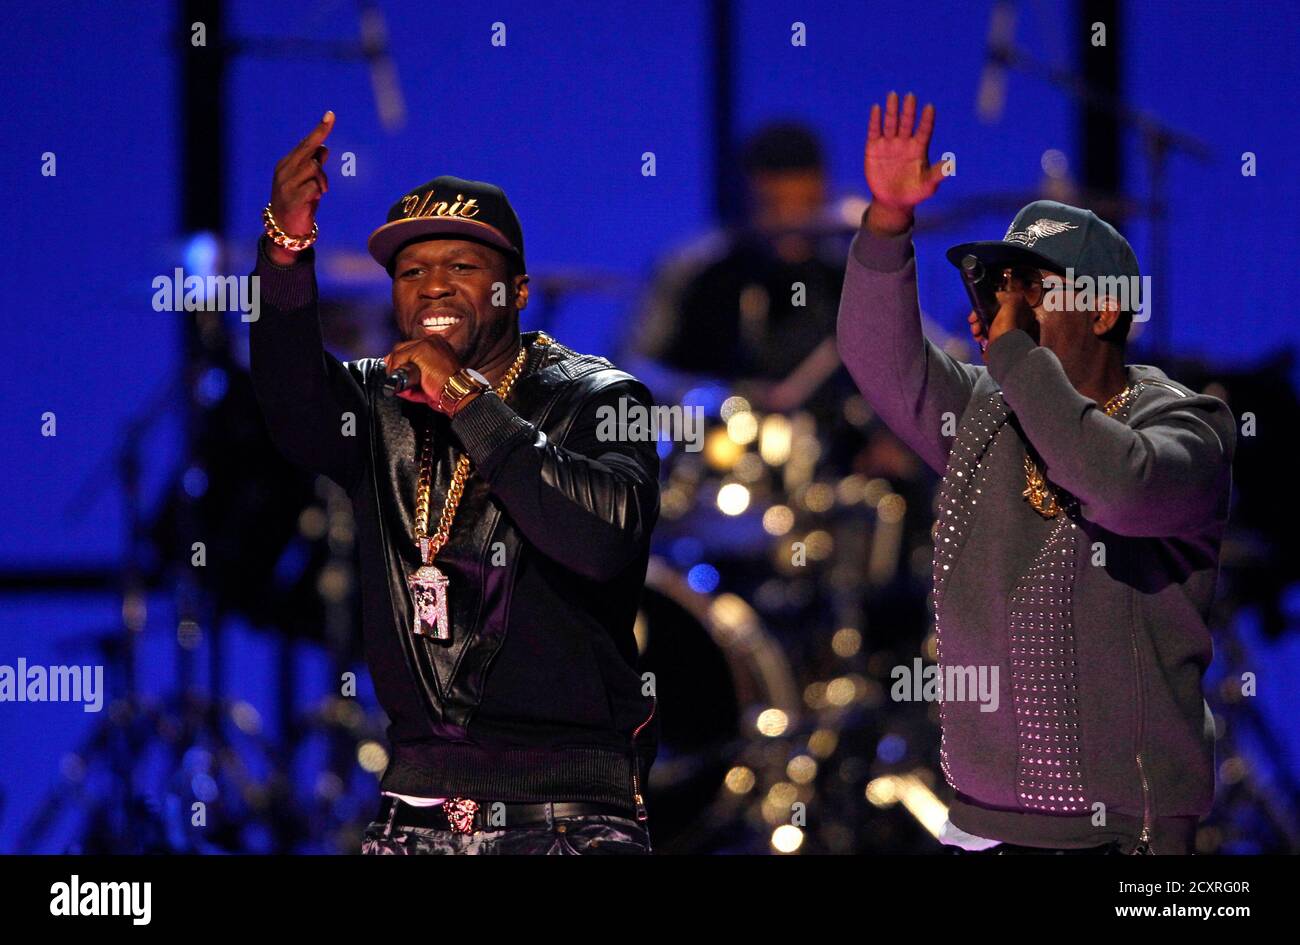 Rapper 50 cent (L) se produit lors du festival de musique iHeartRadio 2014 à Las Vegas, Nevada, le 20 septembre 2014. REUTERS/Steve Marcus (ETATS-UNIS - Tags: ENTERTAINMENT) Banque D'Images